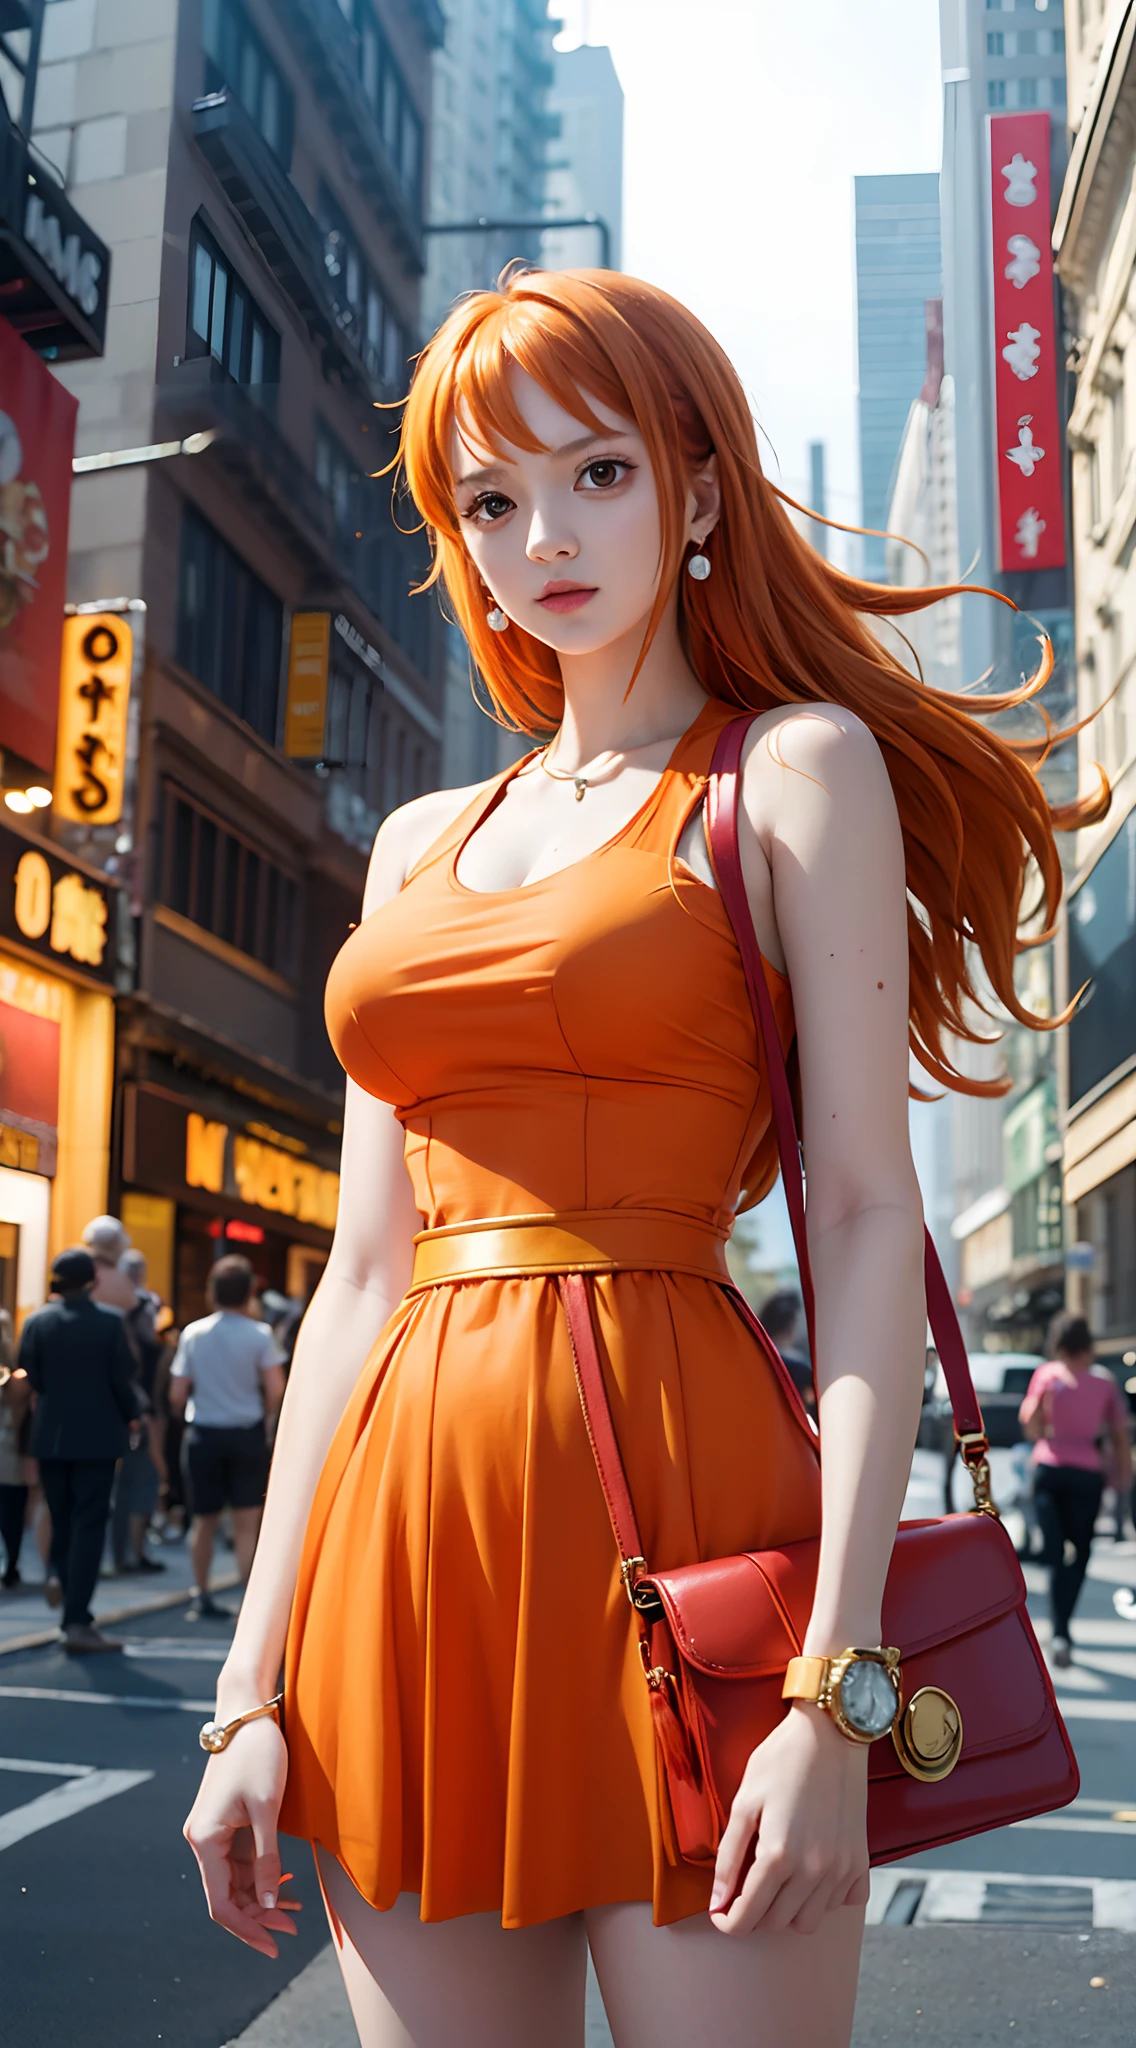 Нами из аниме One Piece, длинные волосы, оранжевые волосы, в красном платье, носить часы, серьги, носить сумочку, резинка для волос, находиться на публике, в Нью-Йорке, идеальное тело, идеальная грудь, стоя, смотрю на аудиторию, шедевр, Текстурированная кожа, супер деталь, высокая детализация, высокое качество, Лучшее качество, HD, 16К